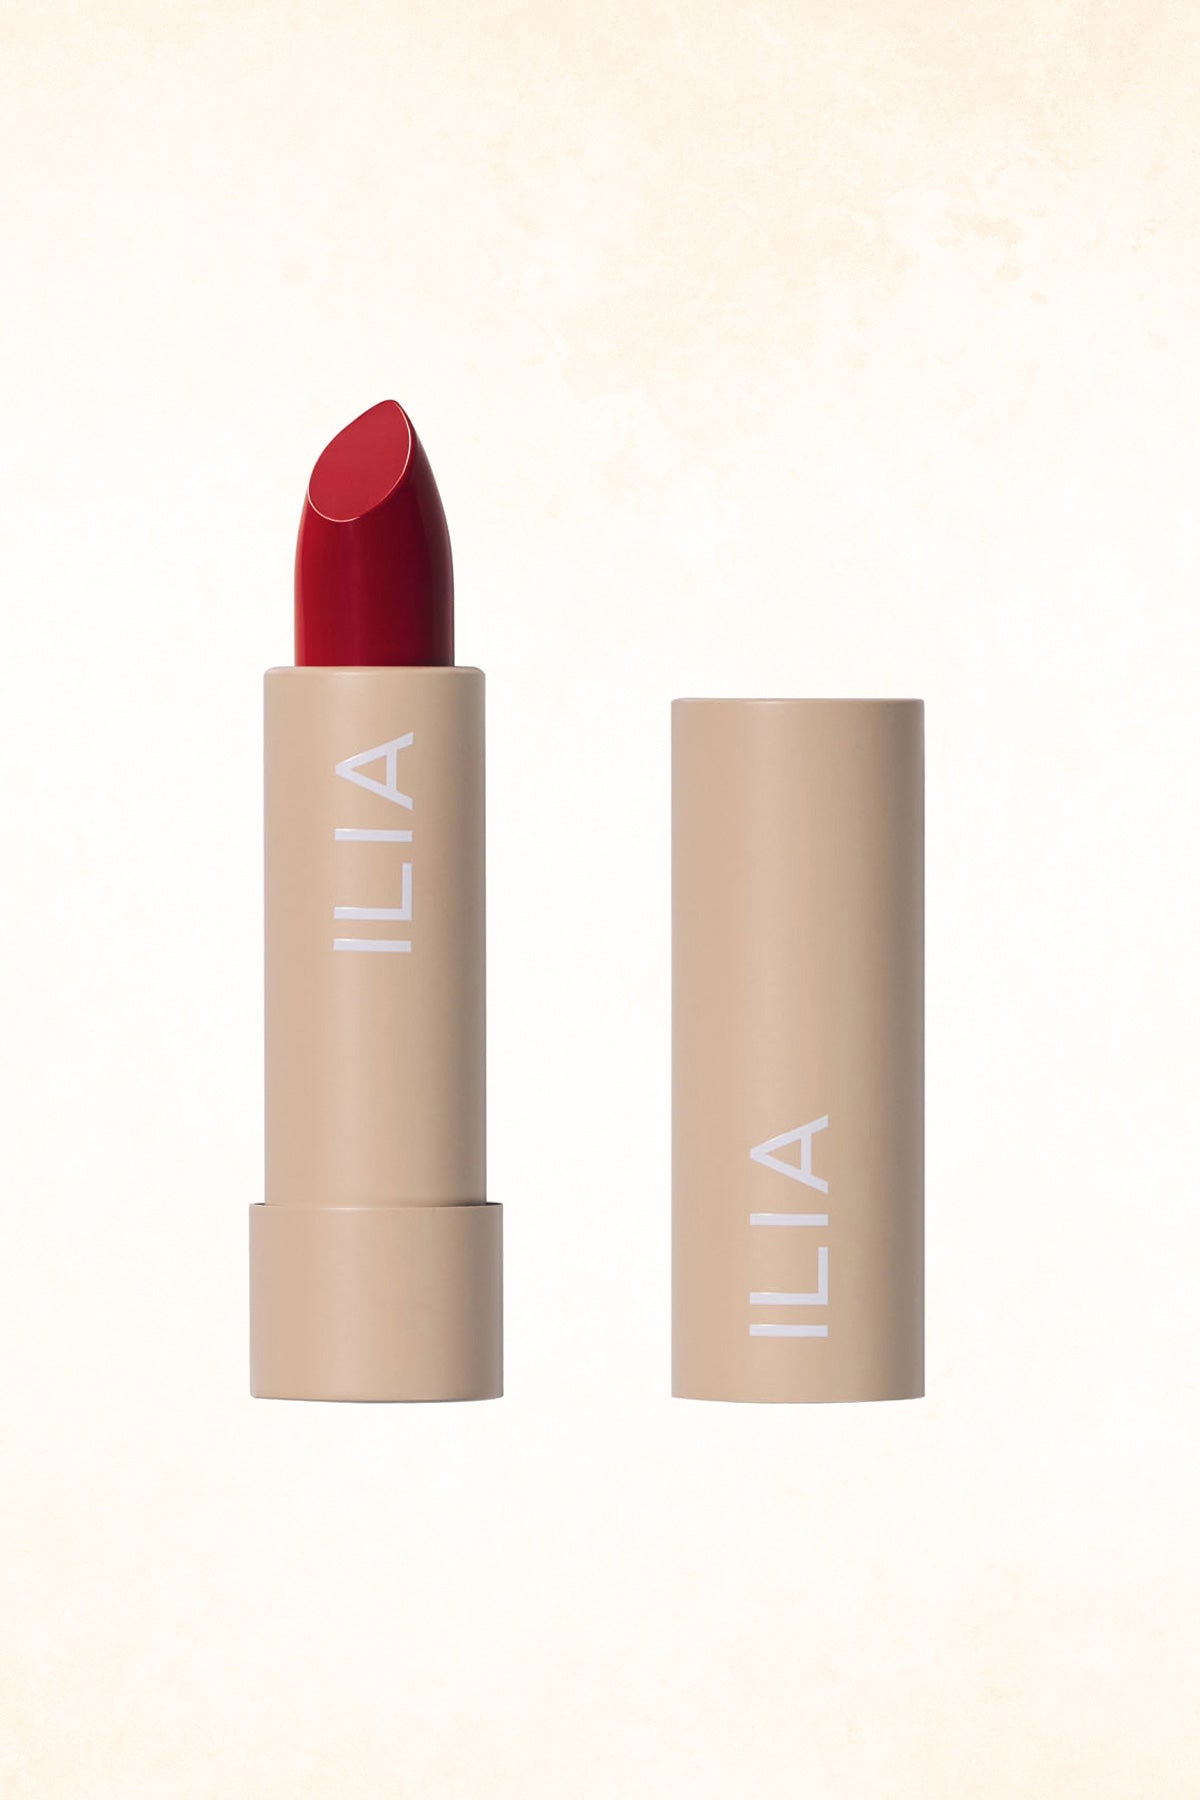 ILIA - Color Block High Impact Lipstick - Tango - 4 g